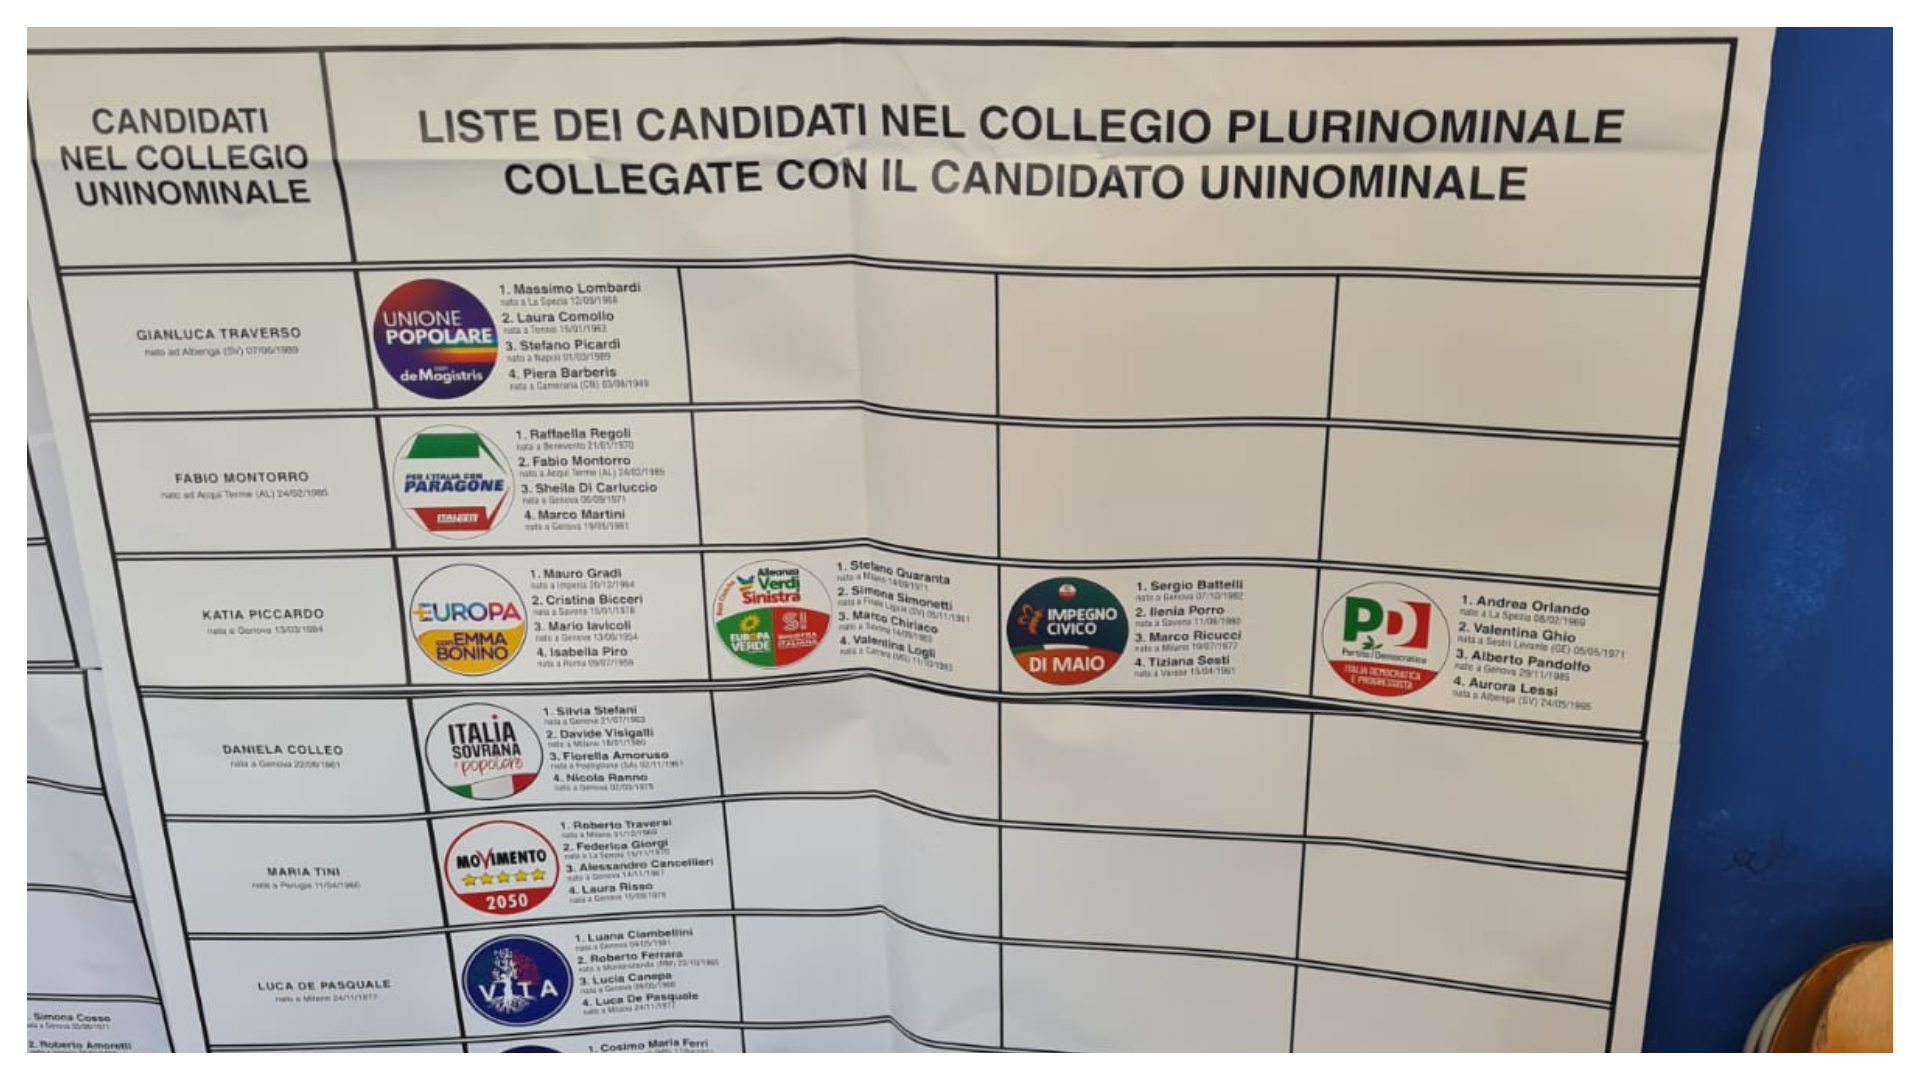 Elezioni, manifesti sbagliati nella sezione 239 di corso Martinetti a Sampierdarena e in centro storico